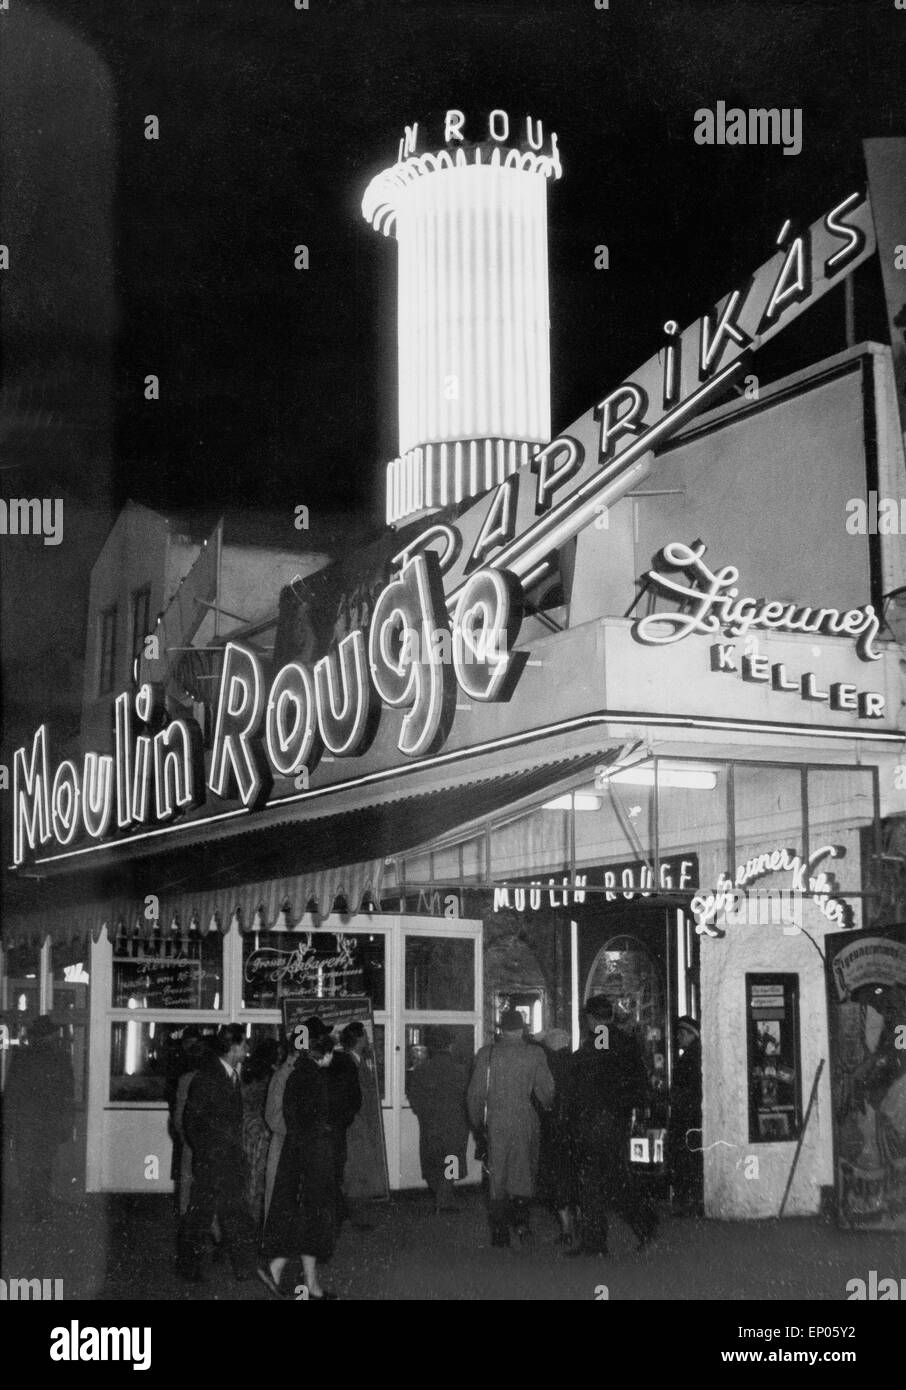 Eingang des Moulin Rouge Nachtclub Auf der Reeperbahn in Hamburg, 1950er Jahre. Eingang des Moulin Rouge Club Hamburg Re Stockfoto